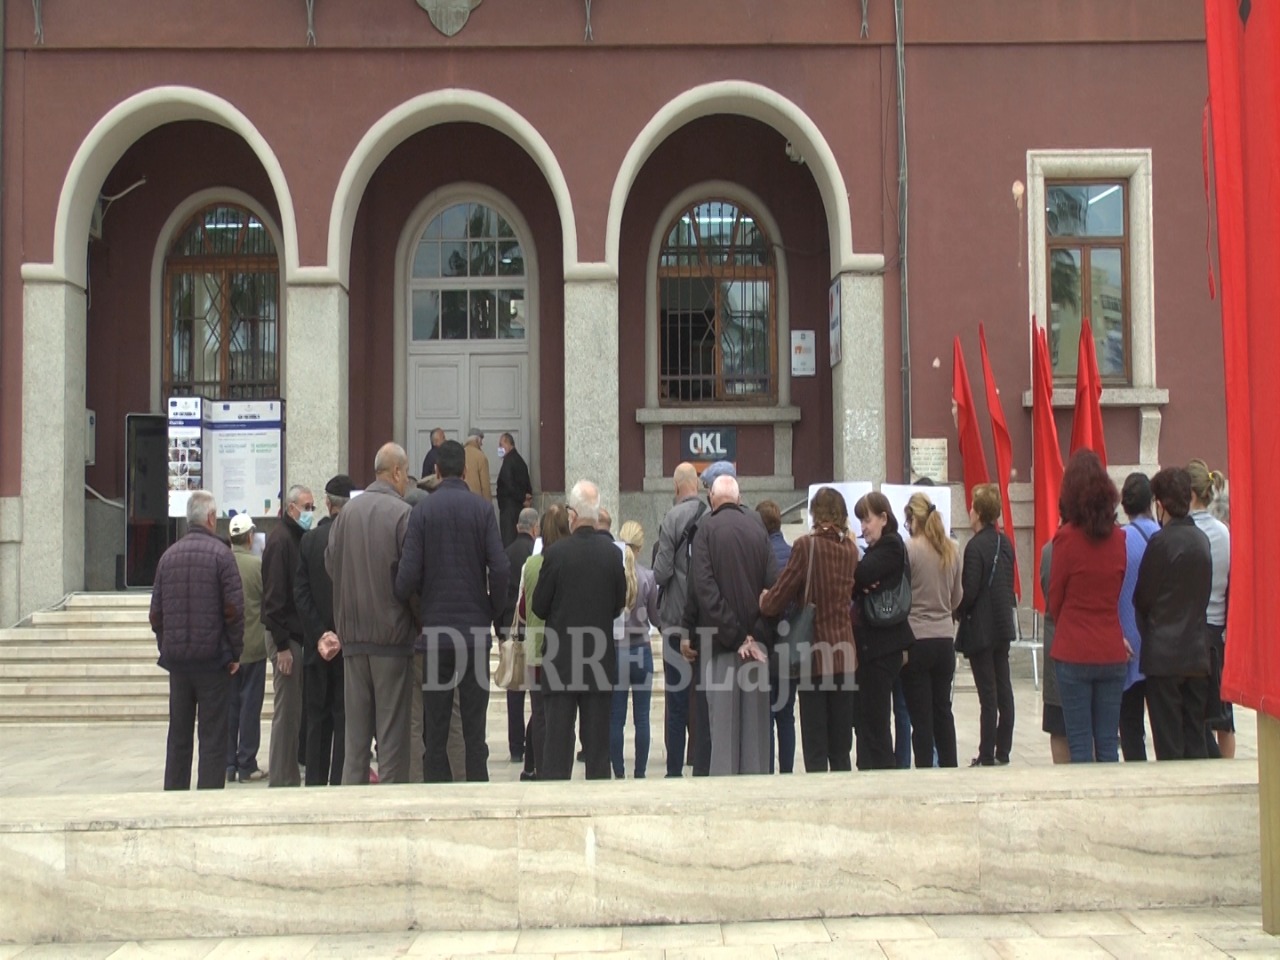 Shoqata e të verbërve sërish protestë para bashkisë Durrës, Farrici: Kryetarja na premtoi zgjidhjen e problemeve, por s&#8217;kemi marrë përgjigje (VIDEO)